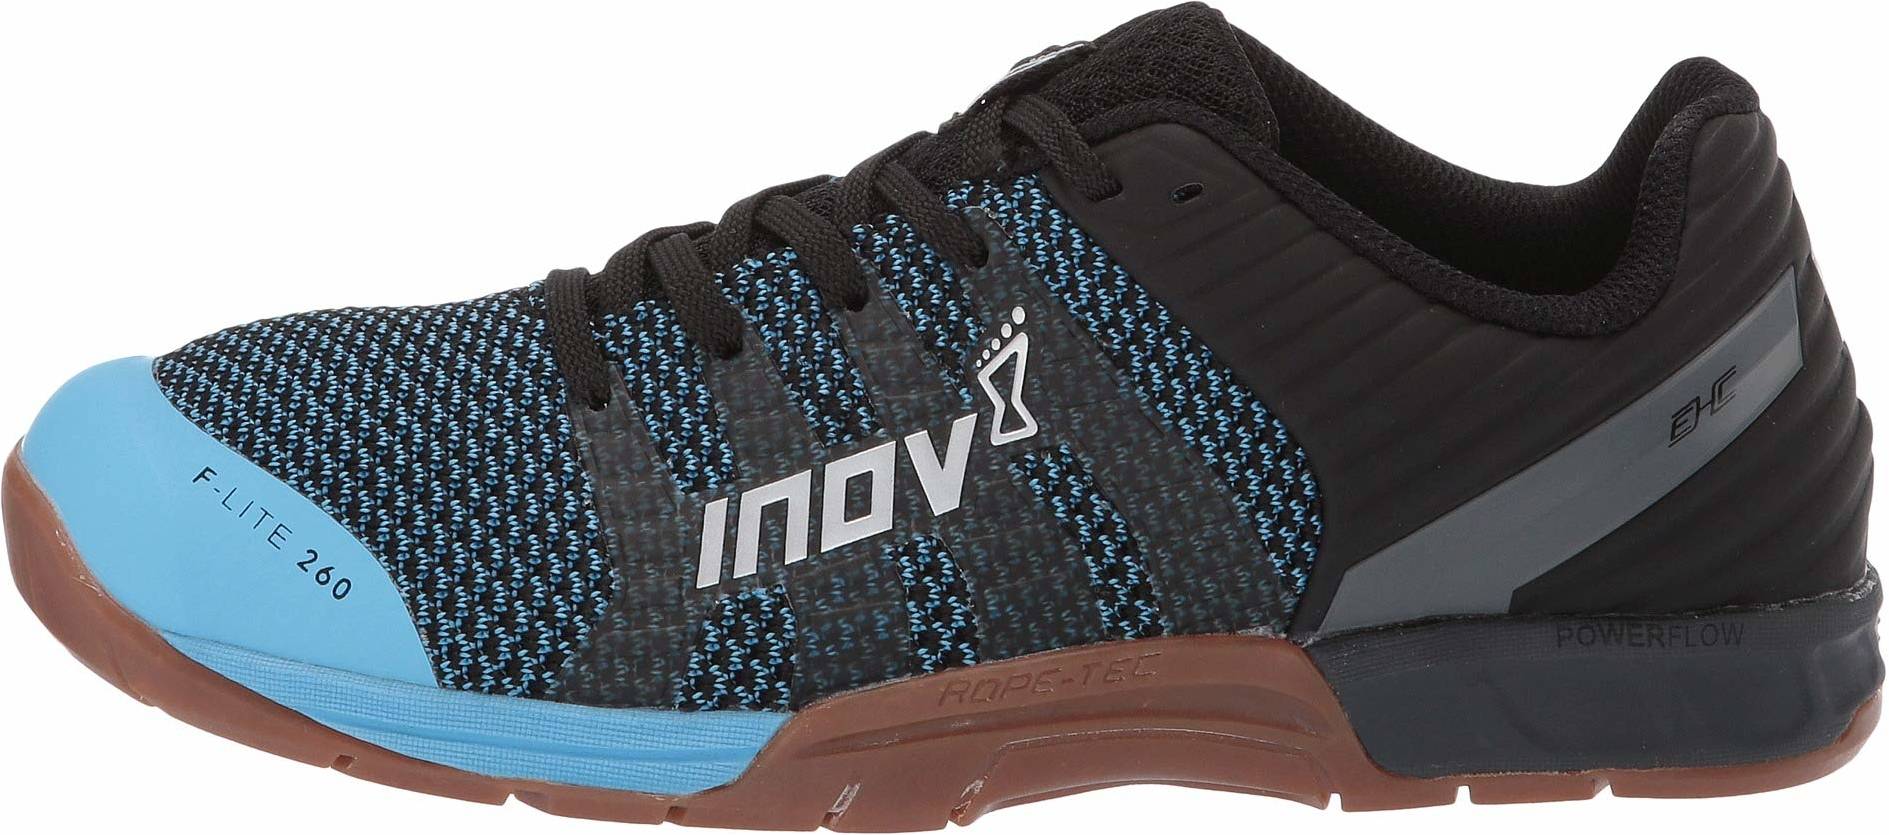 inov8 crossfit shoes